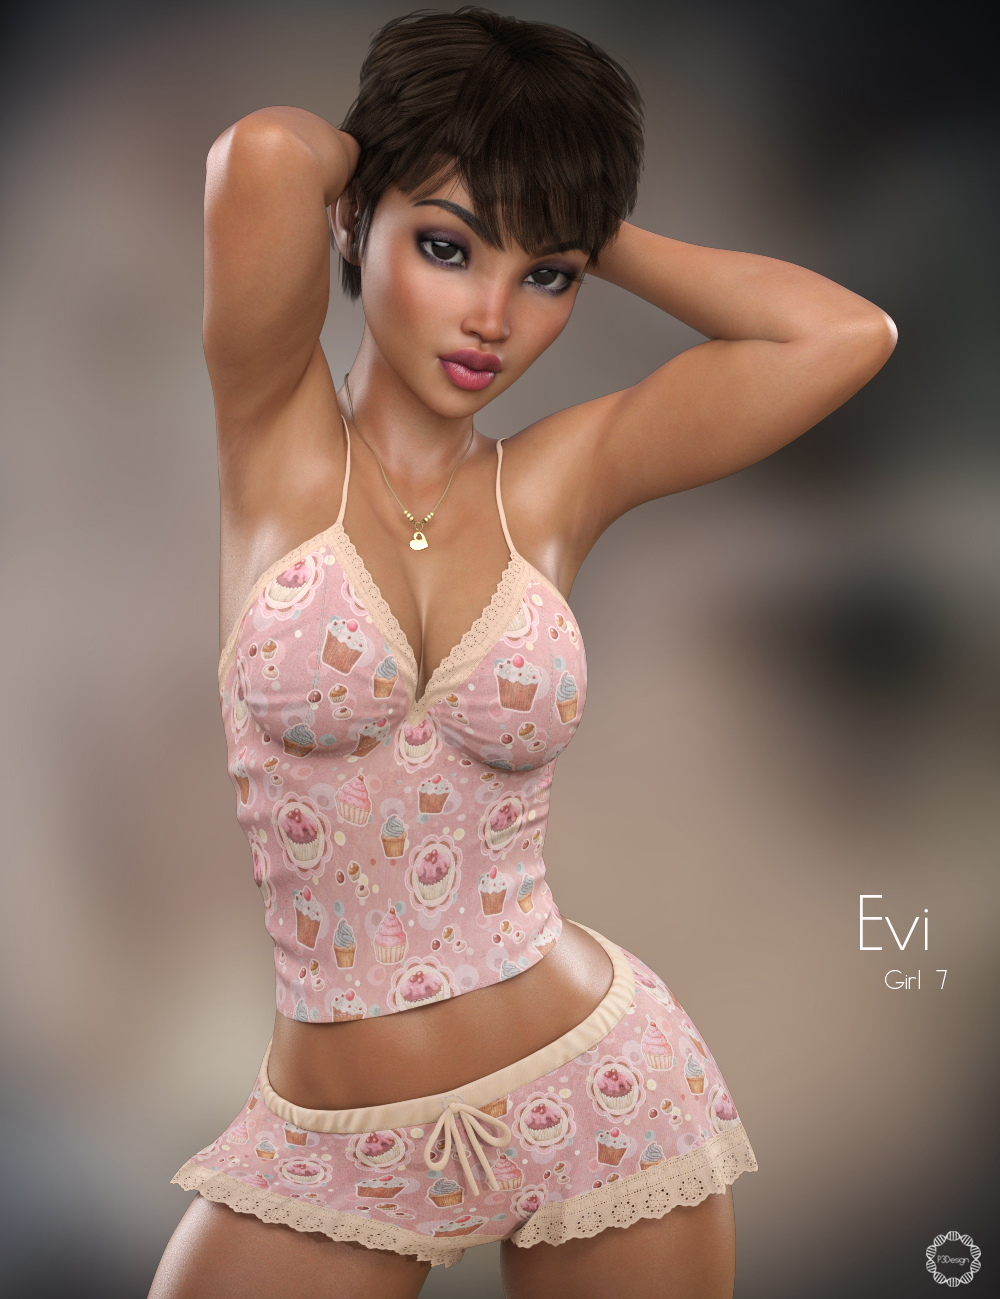 P3D Evi for Girl 7 by: P3Design, 3D Models by Daz 3D